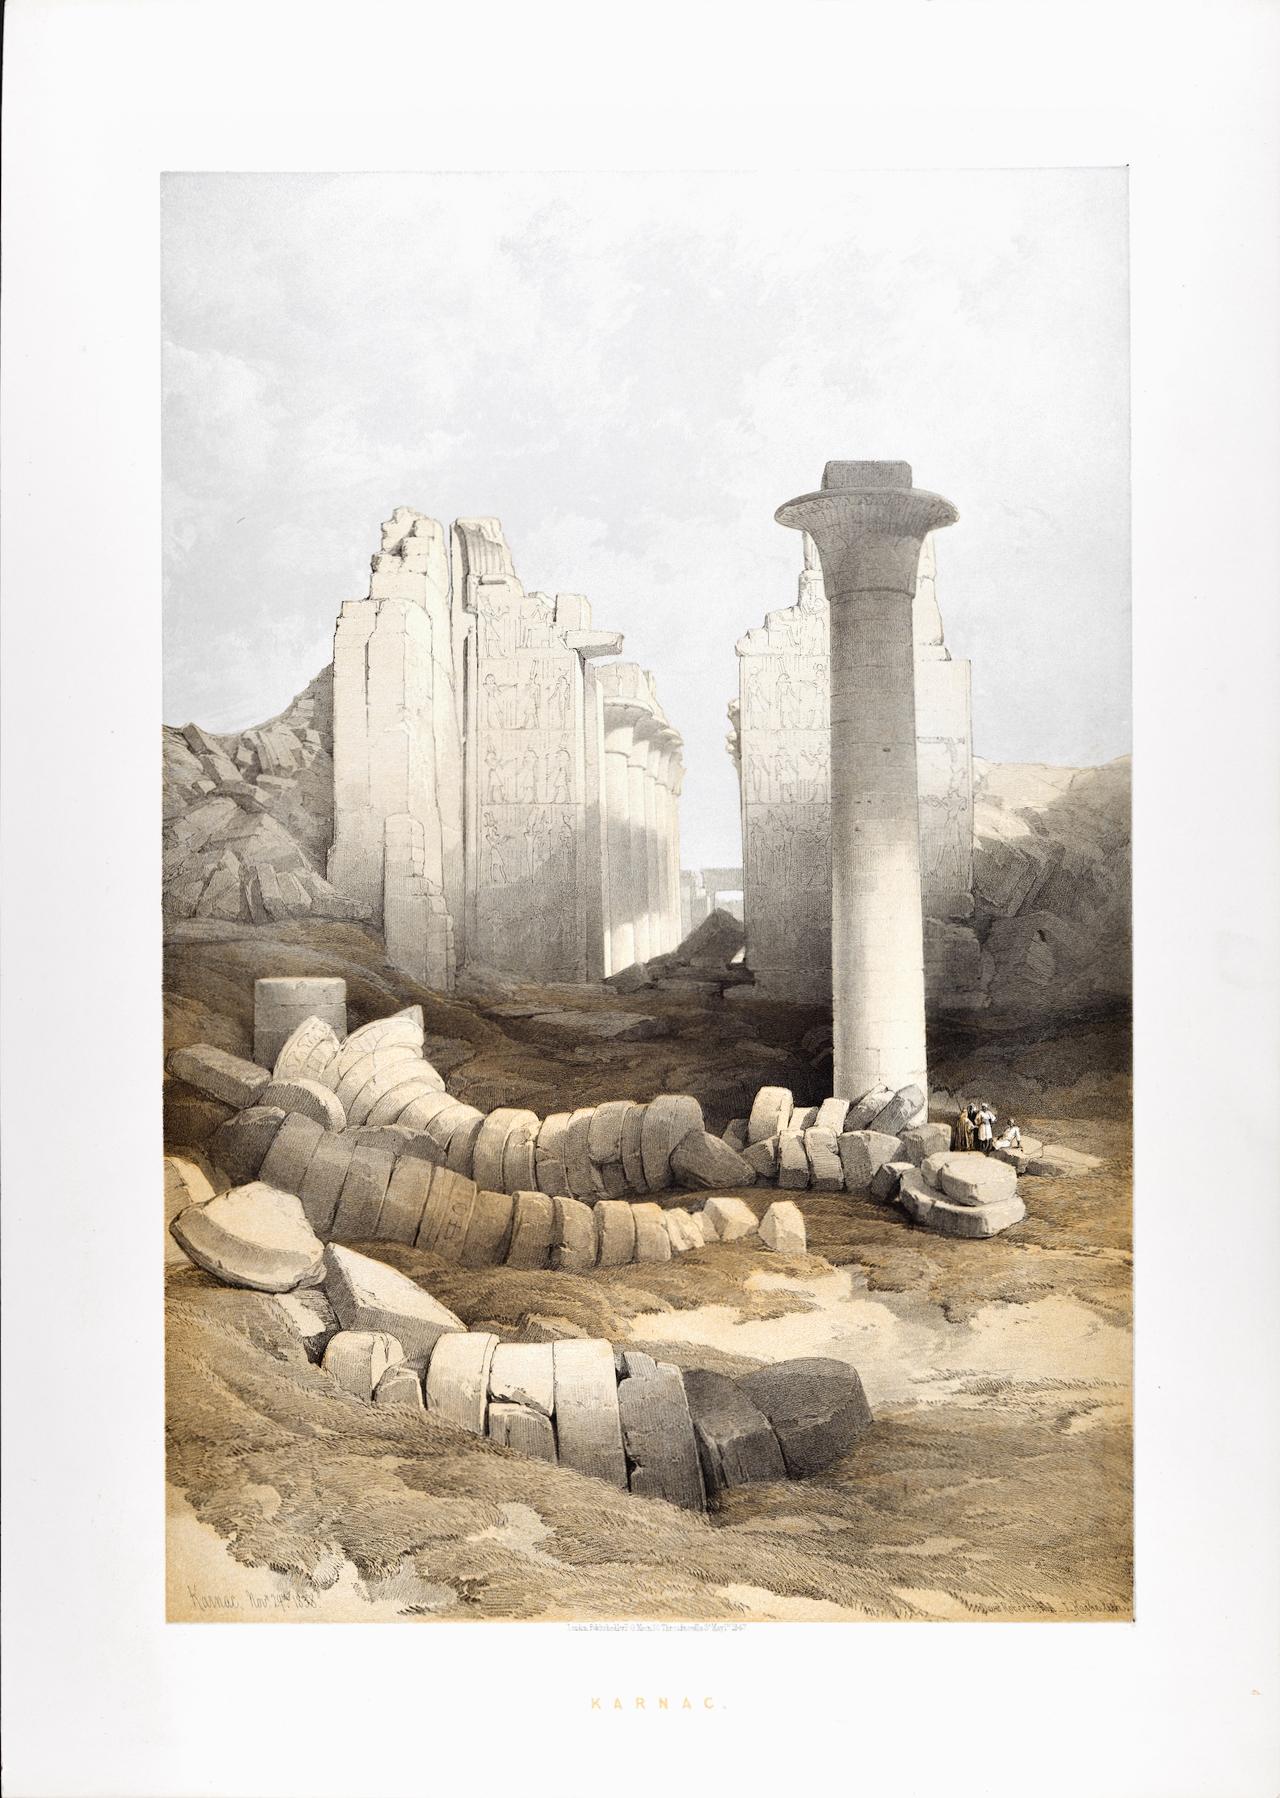 Dies ist eine originale handkolorierte Lithographie aus dem 19. Jahrhundert mit dem Titel "Karnac, Nov. 29, 1838" von David Roberts, aus seinen Ägypten und Nubien Bänden der großen Folio-Ausgabe, die 1847 in London von F. G. Moon veröffentlicht